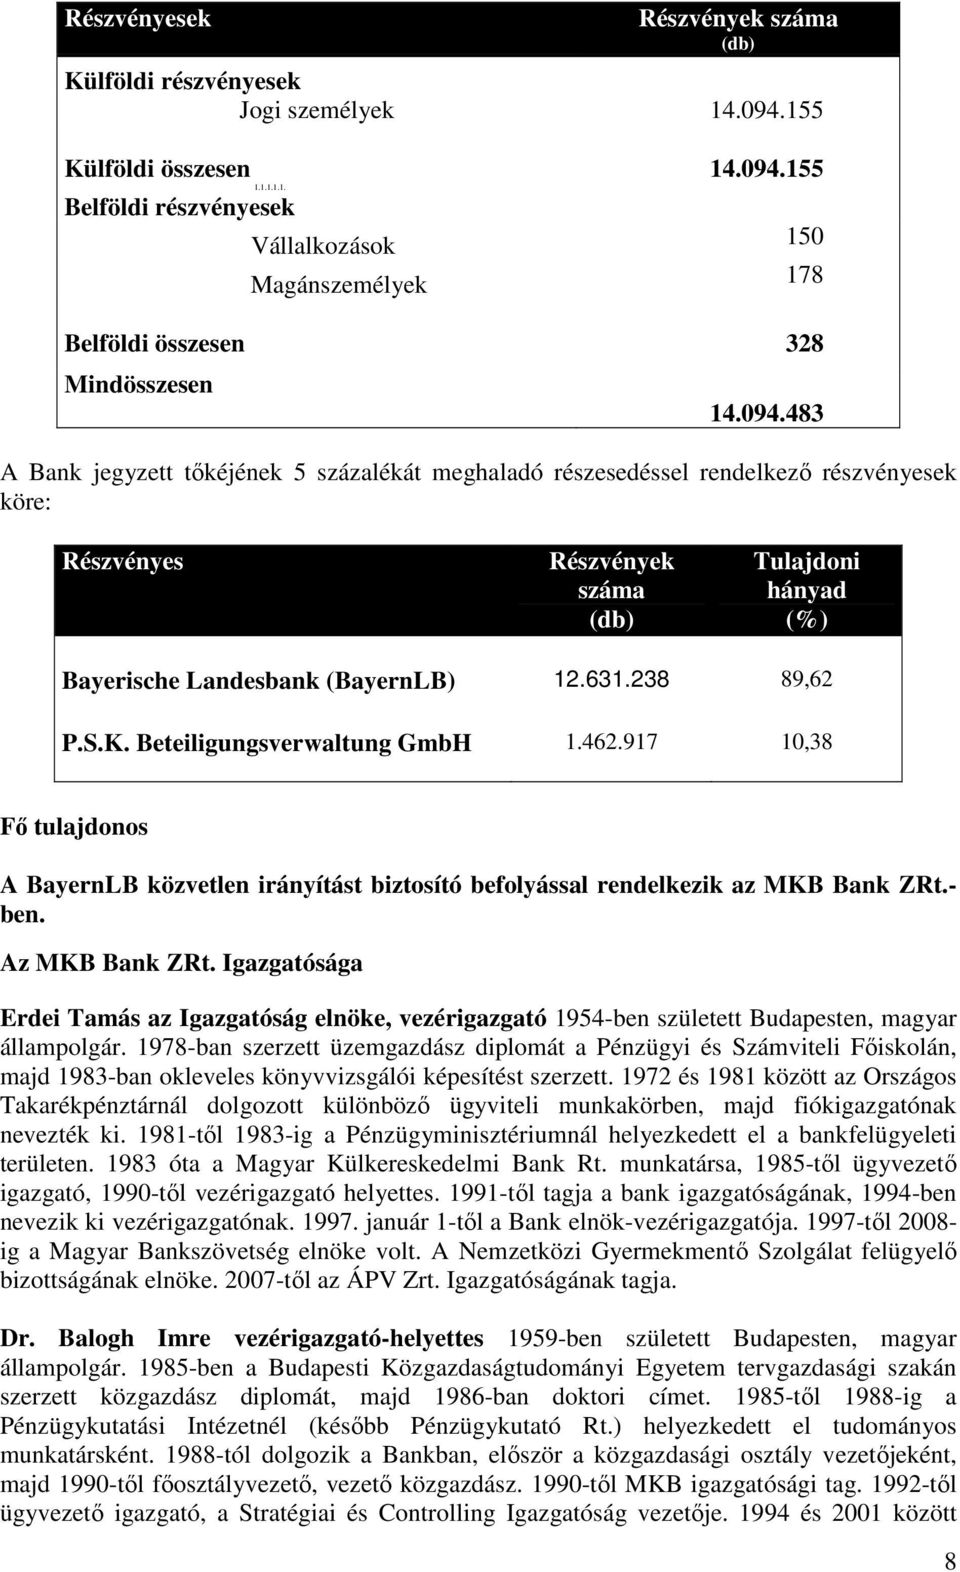 238 89,62 P.S.K. Beteiligungsverwaltung GmbH 1.462.917 10,38 Fı tulajdonos A BayernLB közvetlen irányítást biztosító befolyással rendelkezik az MKB Bank ZRt.- ben. Az MKB Bank ZRt.